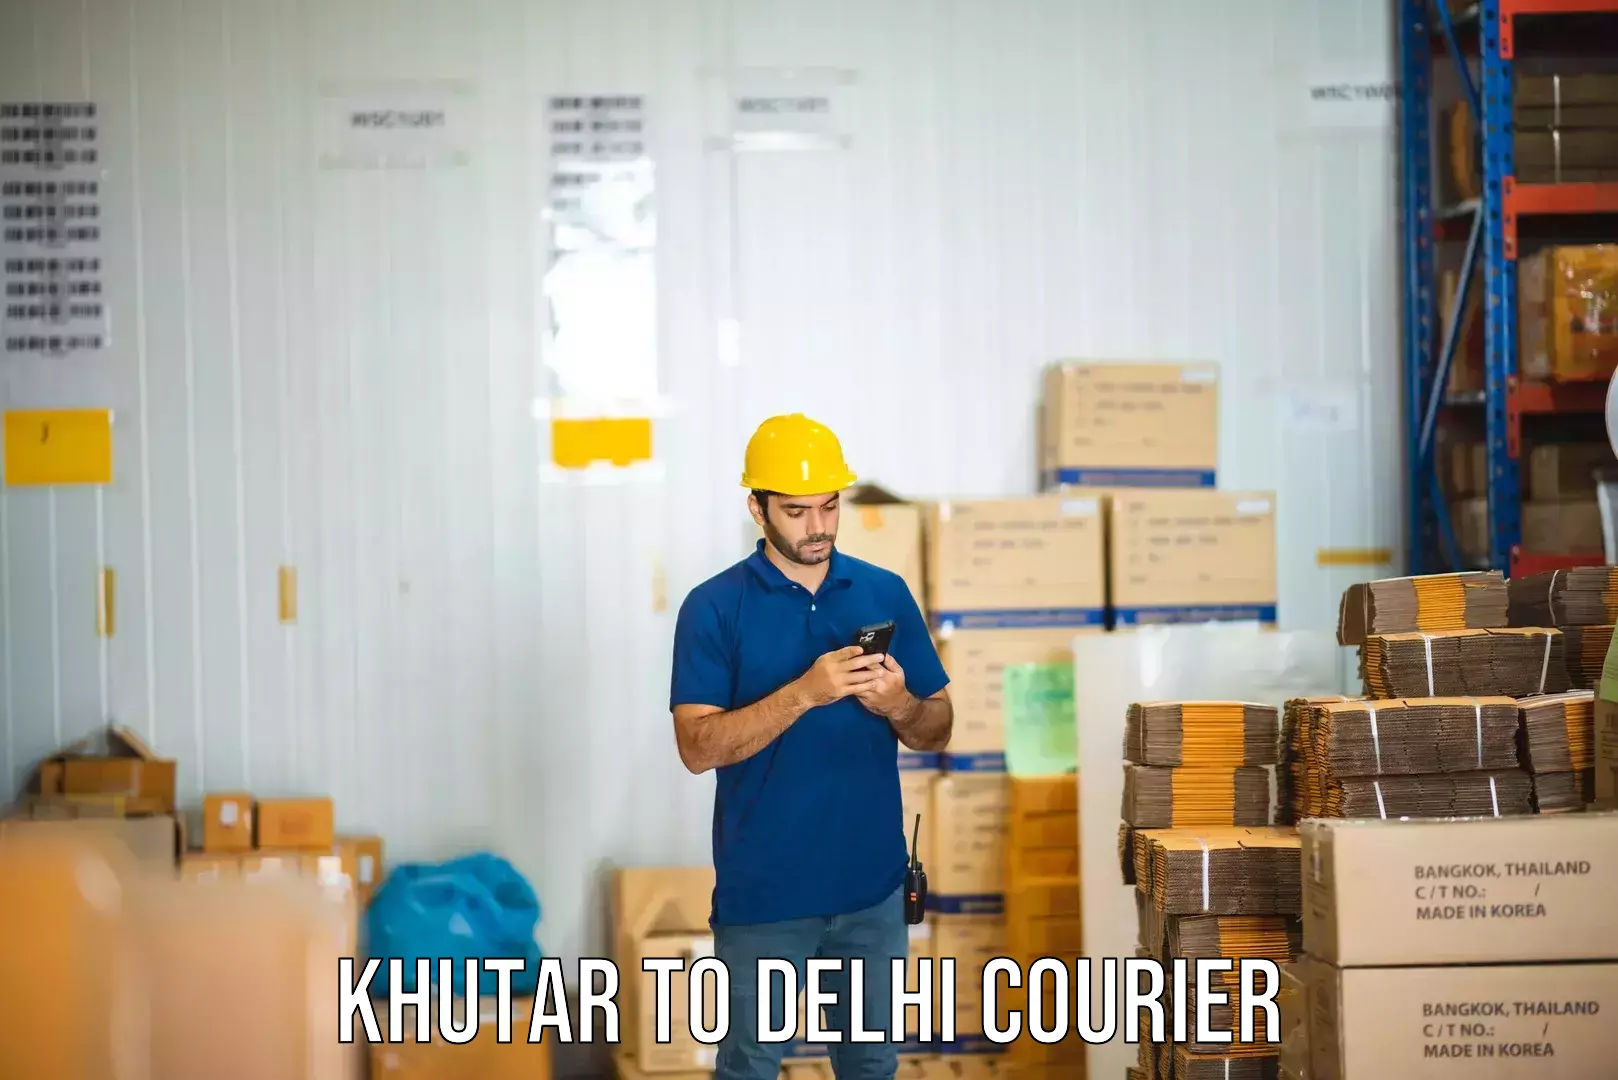 Express logistics providers Khutar to Delhi